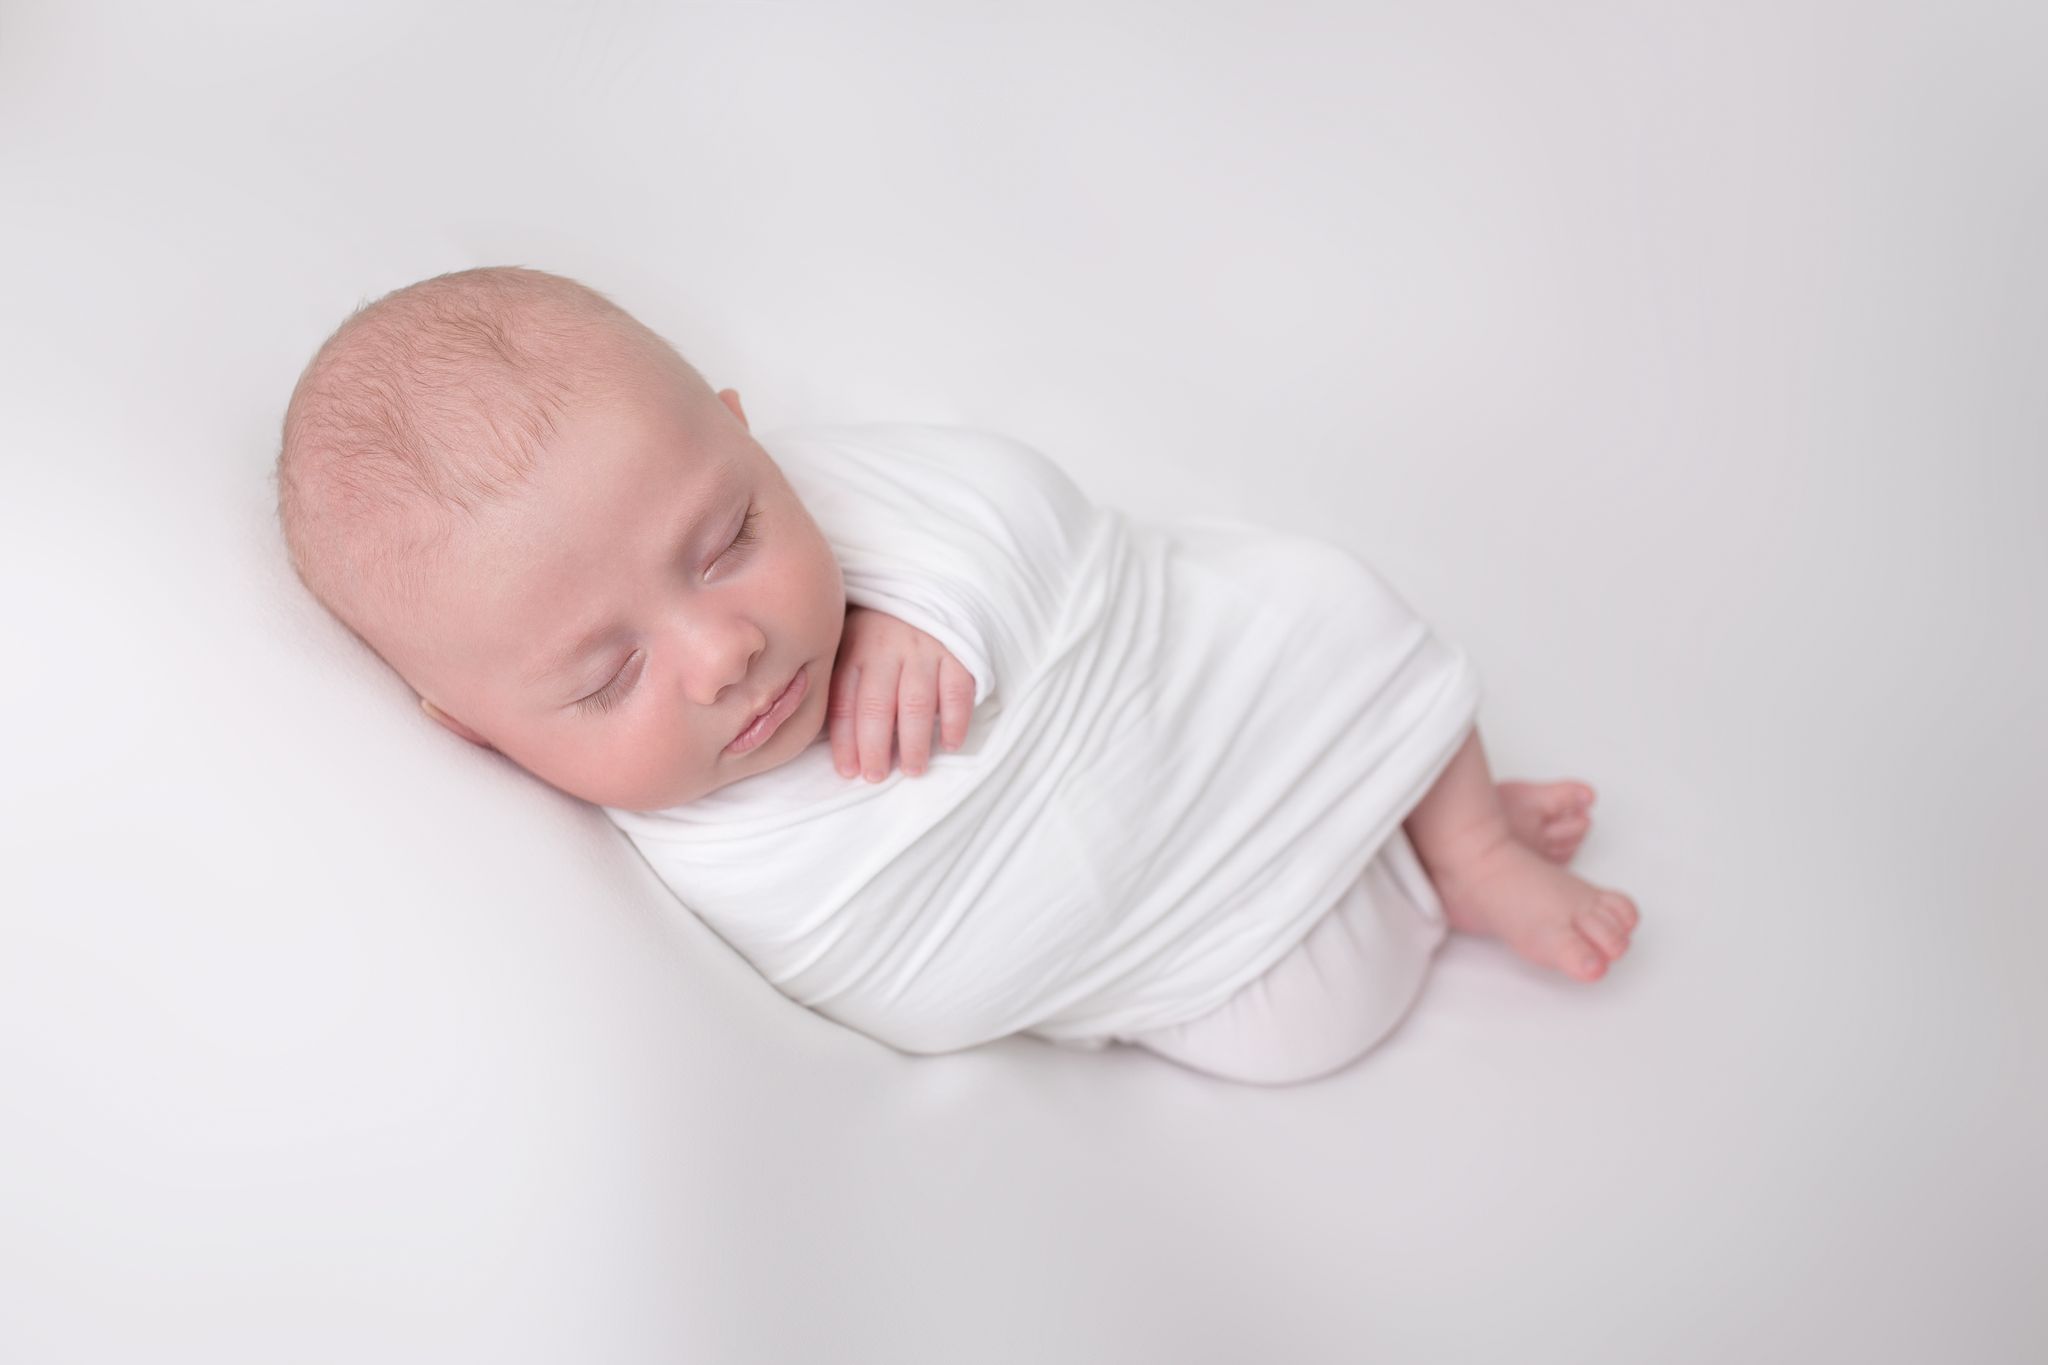 kleines Neugeborenes eingewickelt in weiß führt zu Blog der Babybauch und Familien Fotografin Sabrina Zisch-Ortner